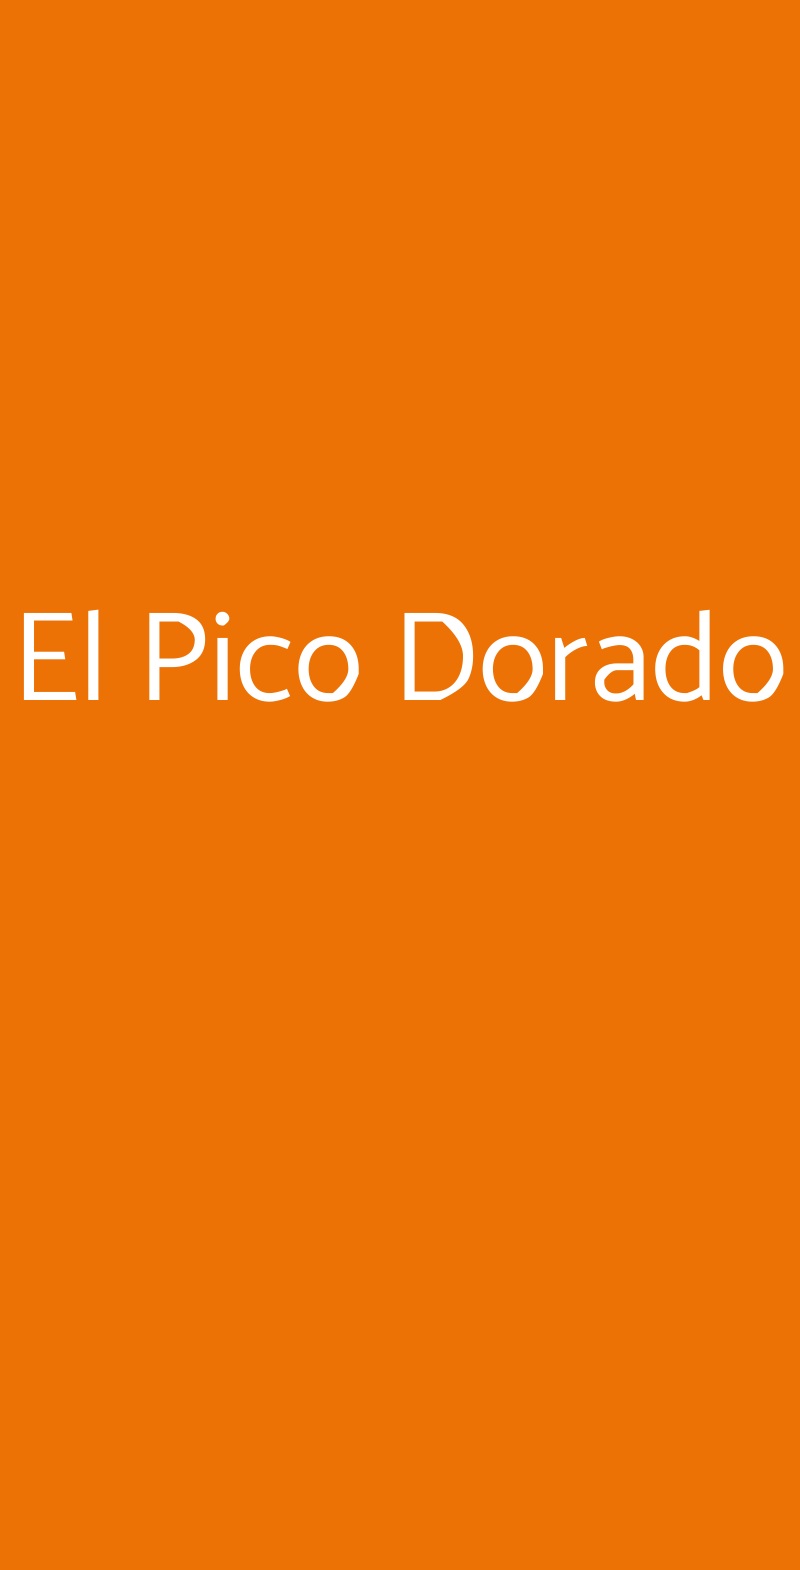 El Pico Dorado Treviglio menù 1 pagina